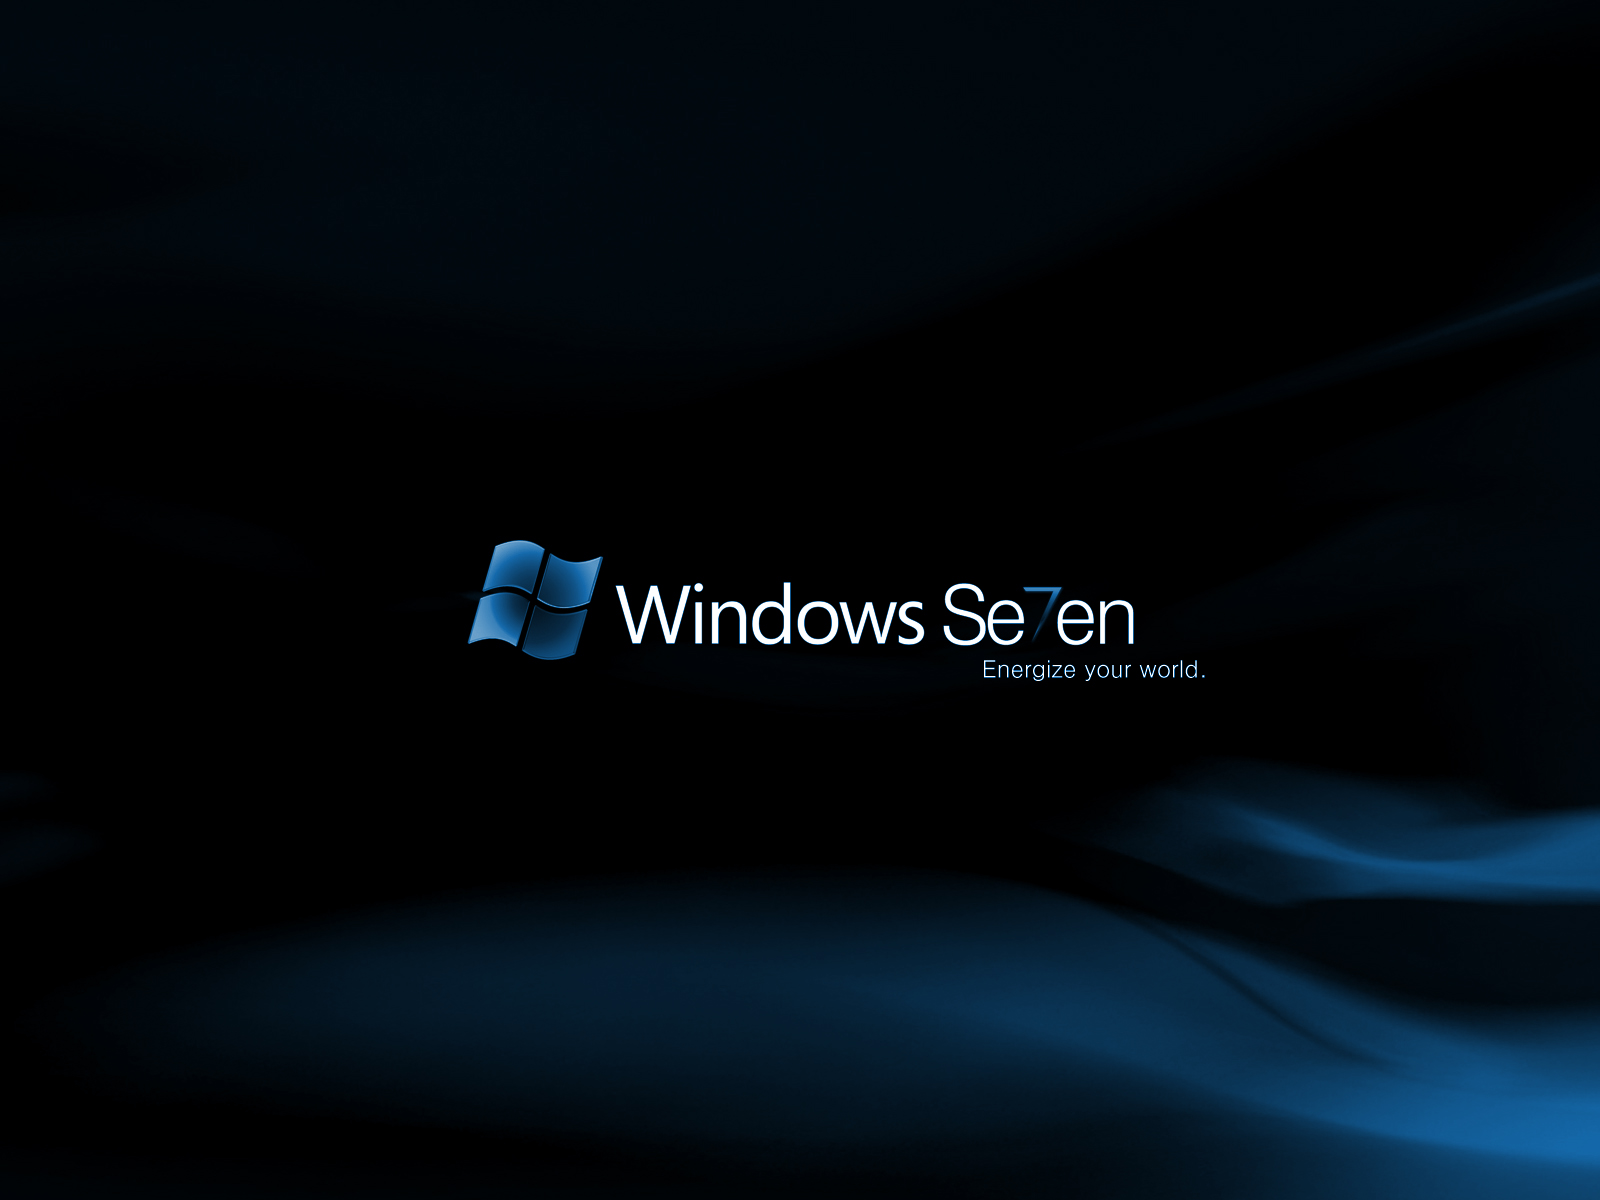 16 Windows 7 High Resolution Wallpapers - Downloads - TechMynd